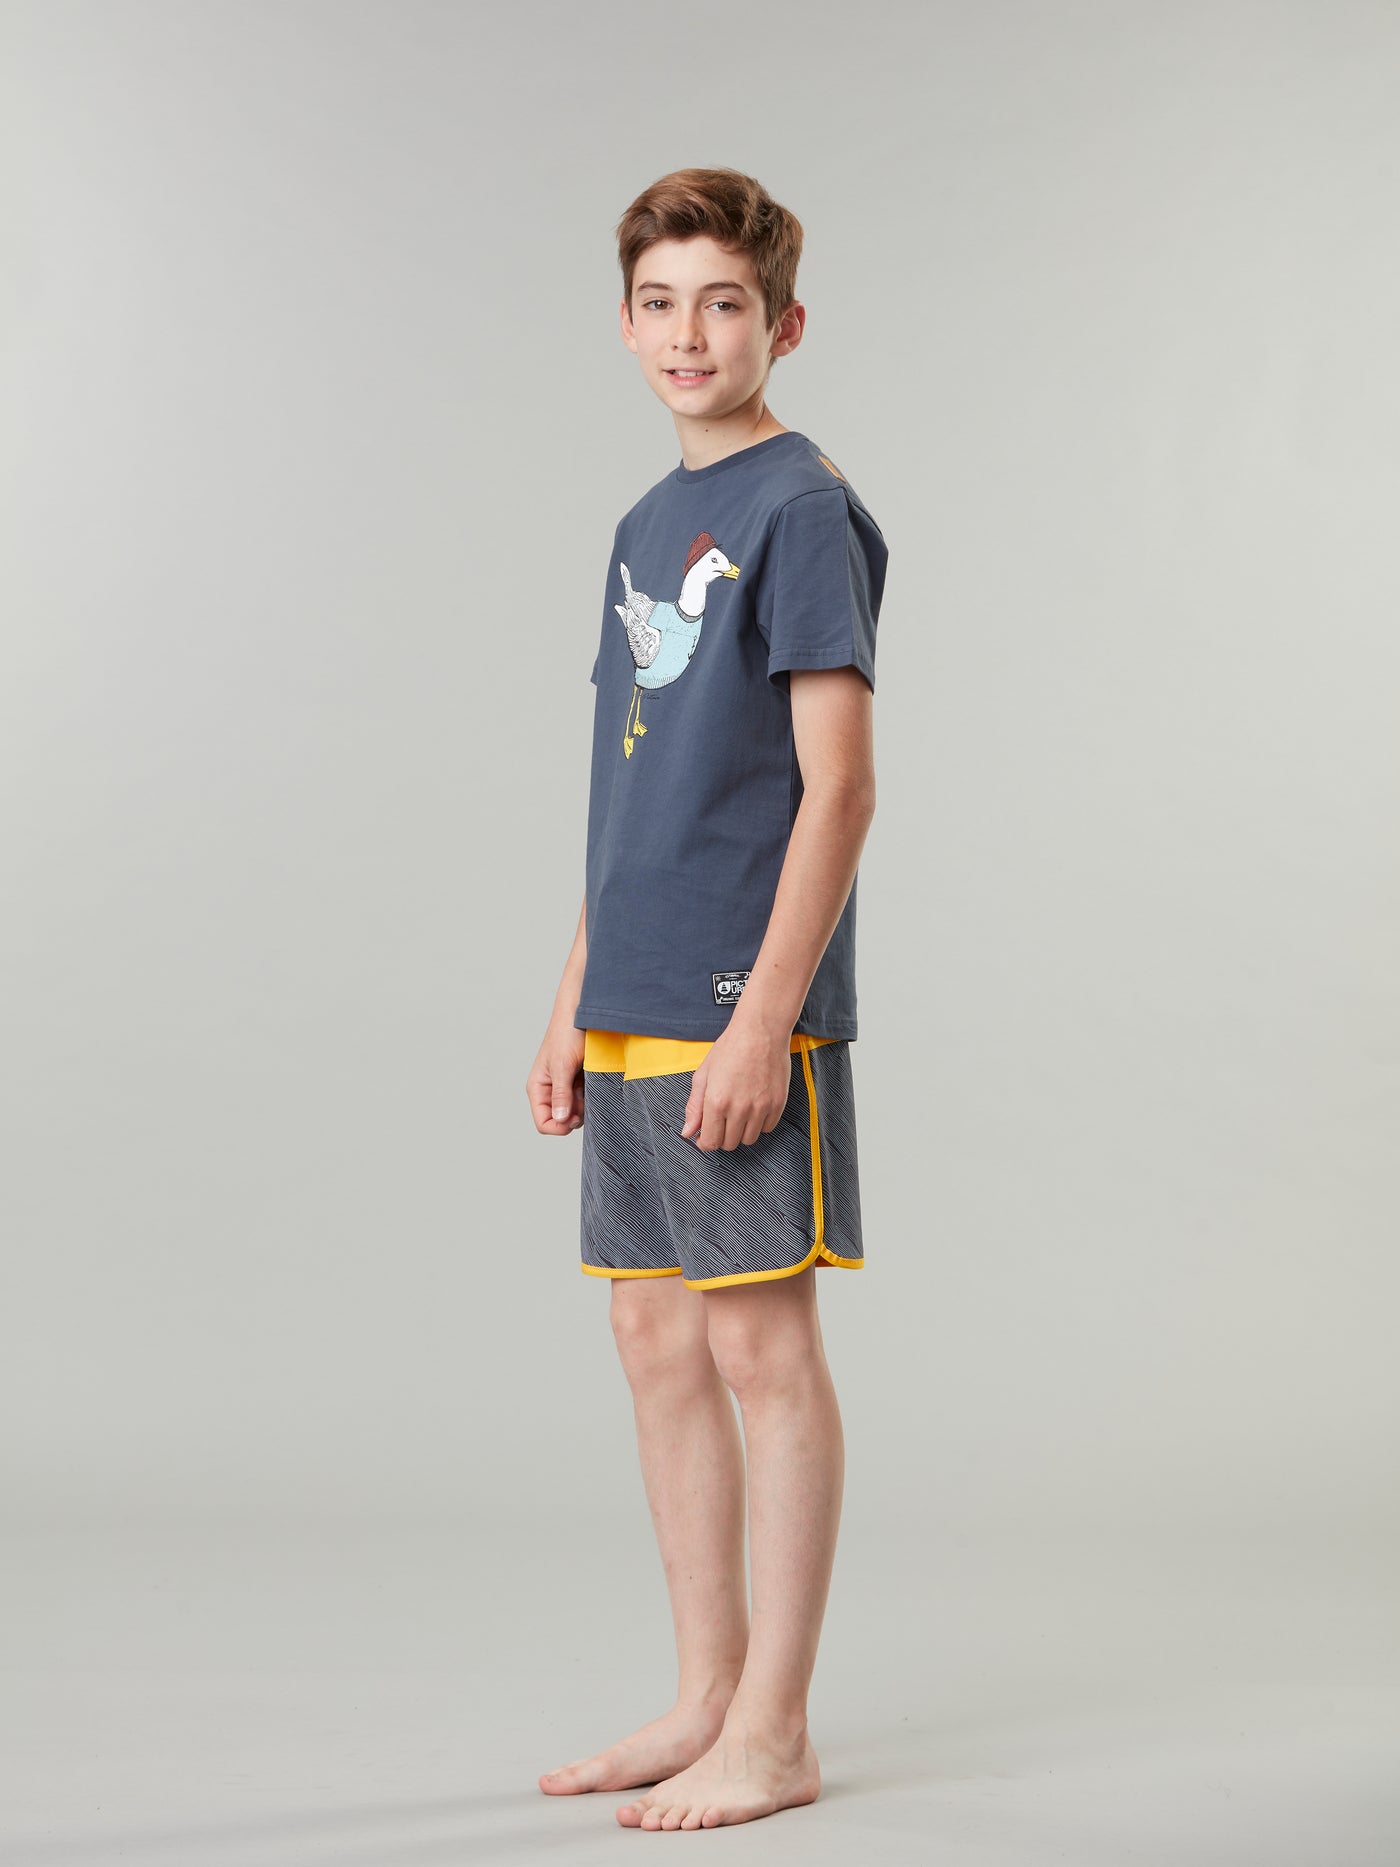 Pojan päällä Picture Organicin nuorten shortsit värissä Wood hieman sivuttain kuvattuna